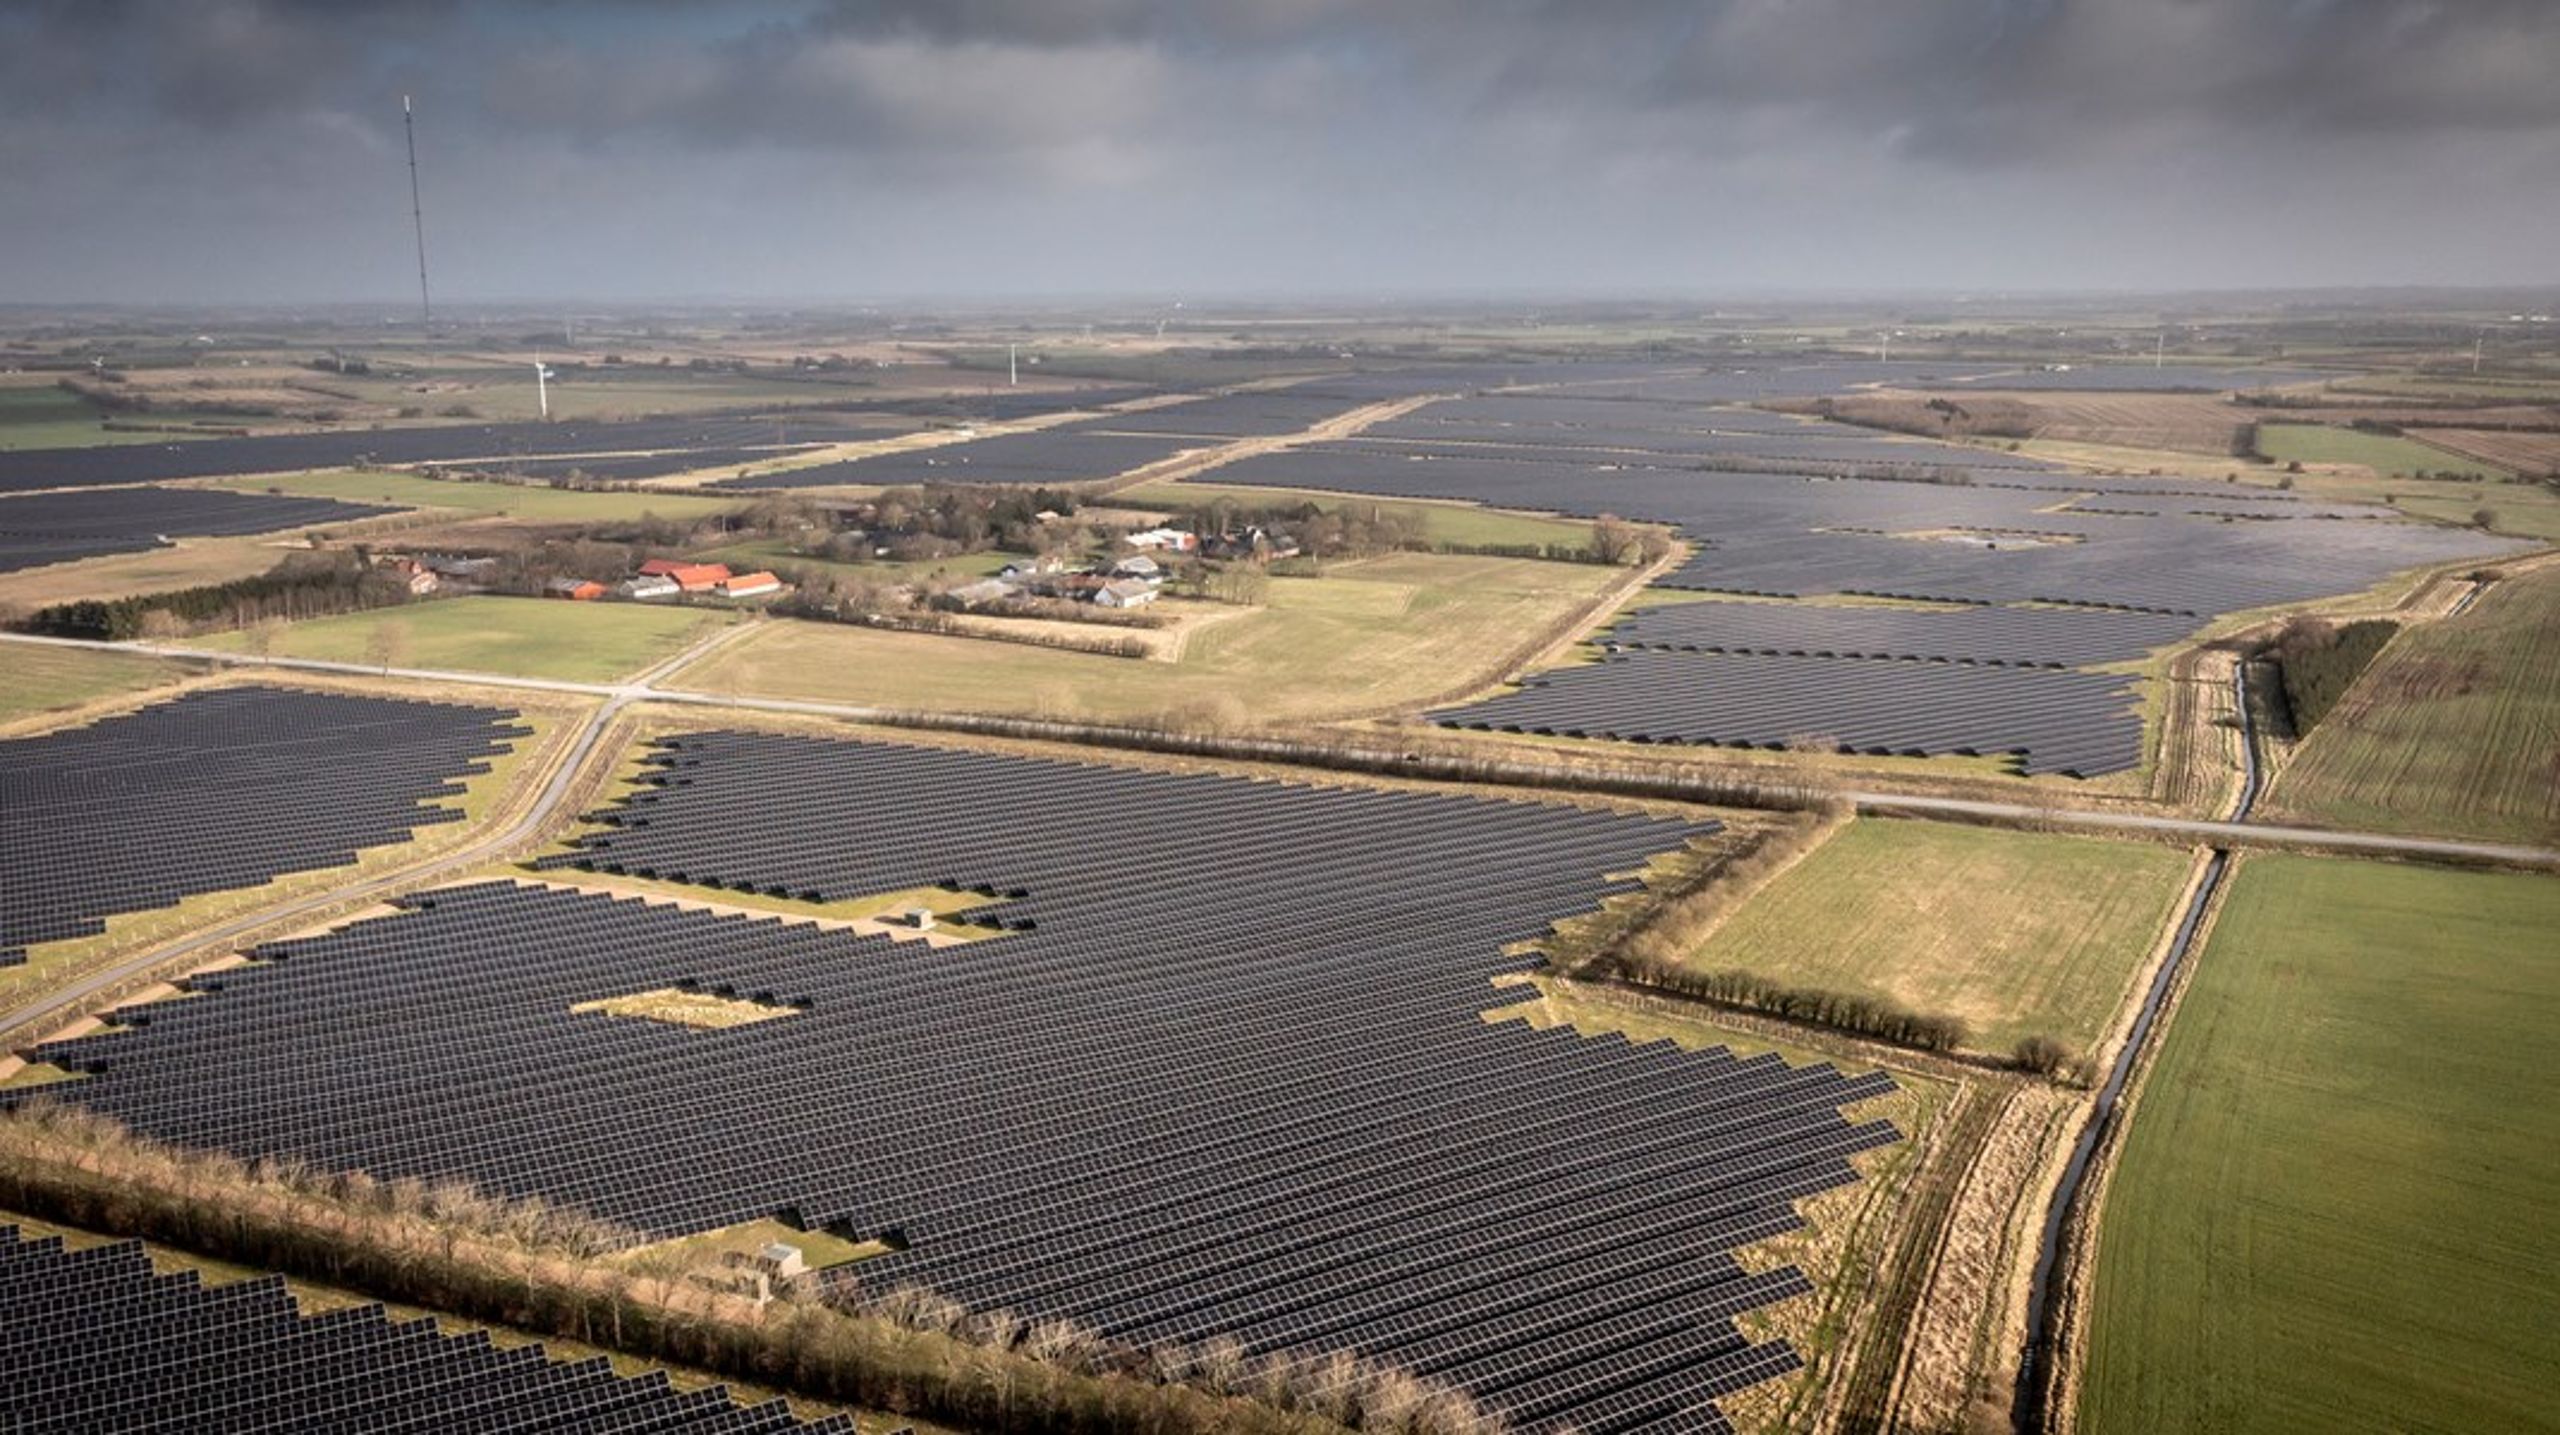 Nord-Europas største solcellepark ligger på Jylland i Danmark. De 12 husstandene i&nbsp;Hjolderup er omringet av 340 hektar med solcellepanel. En ny rapport viser at&nbsp;EU er langt fremme på investeringer i fornybar energi og størst på fornybar kraftproduksjon.&nbsp;